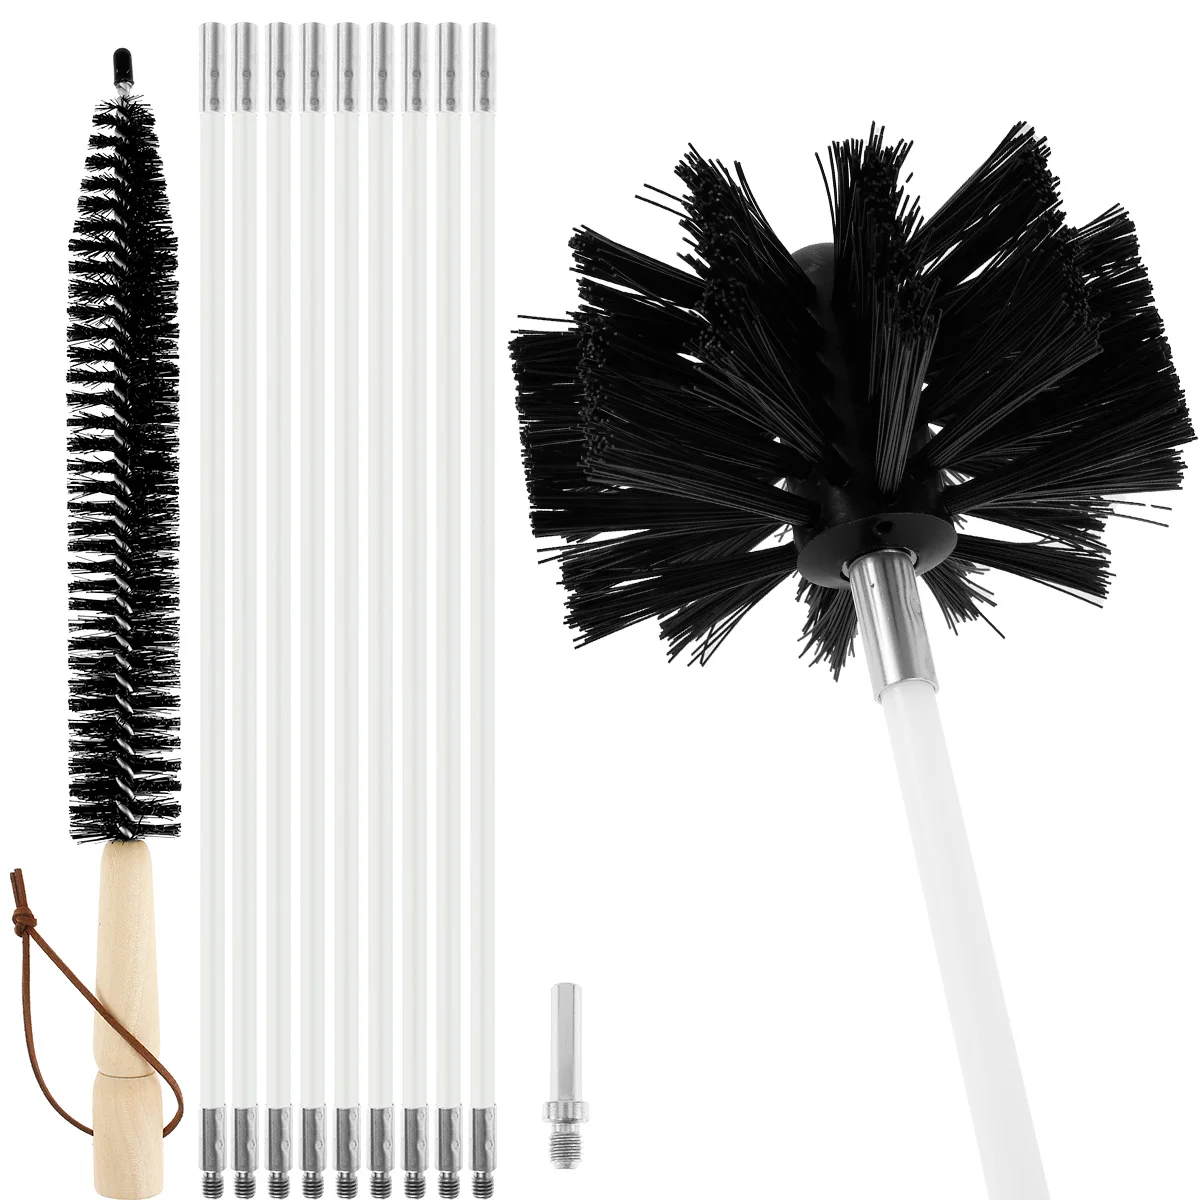 Chimney Typhoon Juego de Barrido eléctrico 1 Brush Head Cepillo Original para Chimenea Kit de Herramientas de Limpieza Rotatoria con Varillas Flexibles de Nailon 400mm 9 Rods